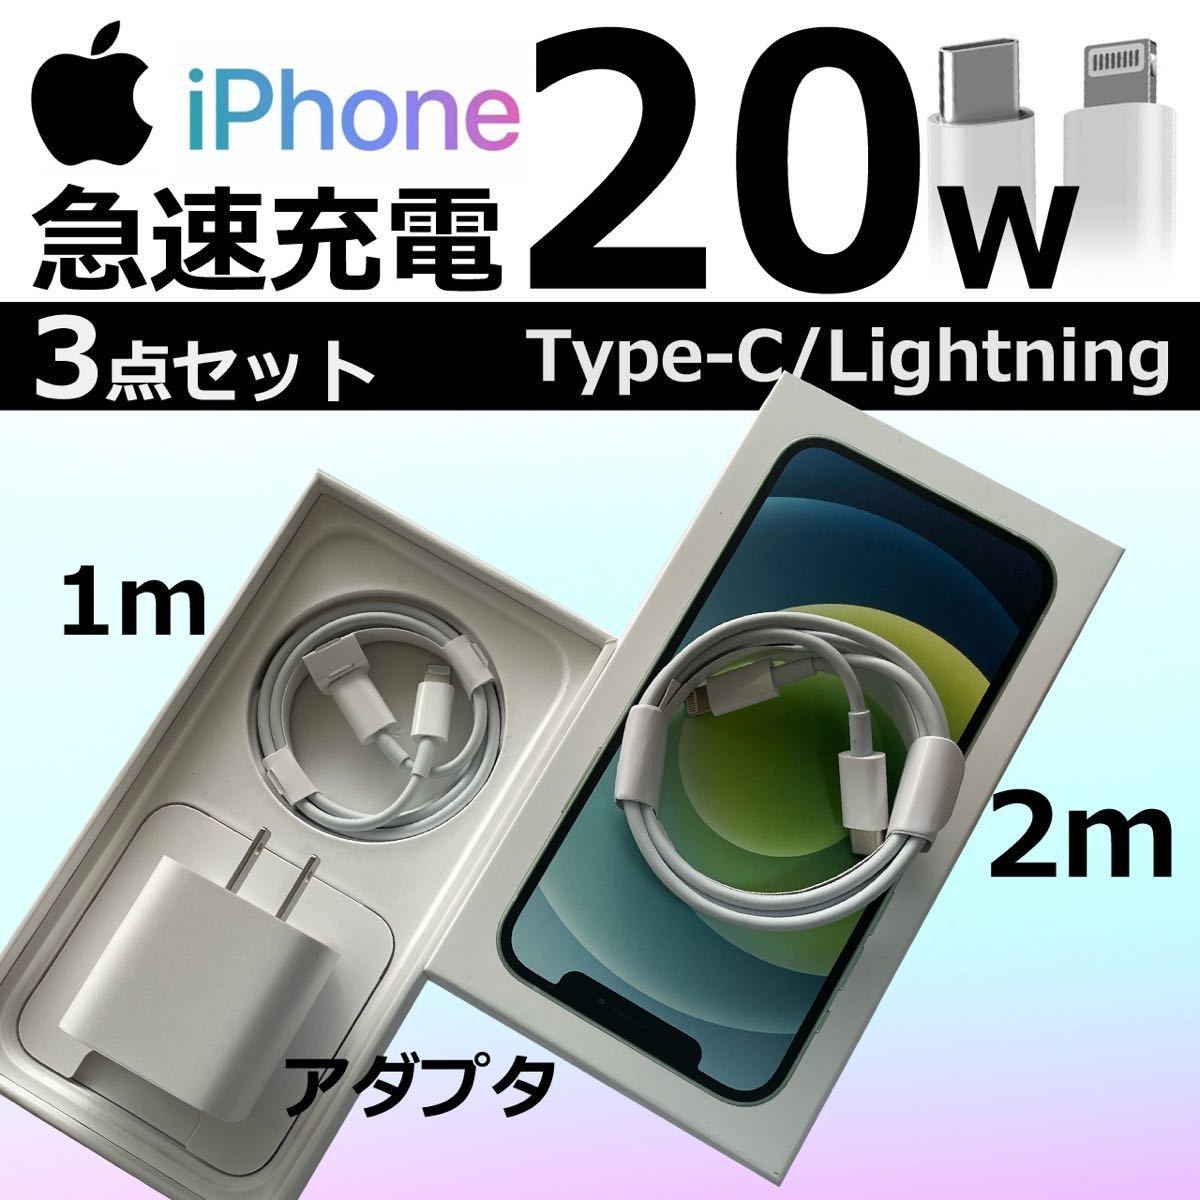 iPhone ケーブル ライトニングケーブル 充電器 コンセント 電源 Type-C PDアダプタ 急速充電 20w_画像1